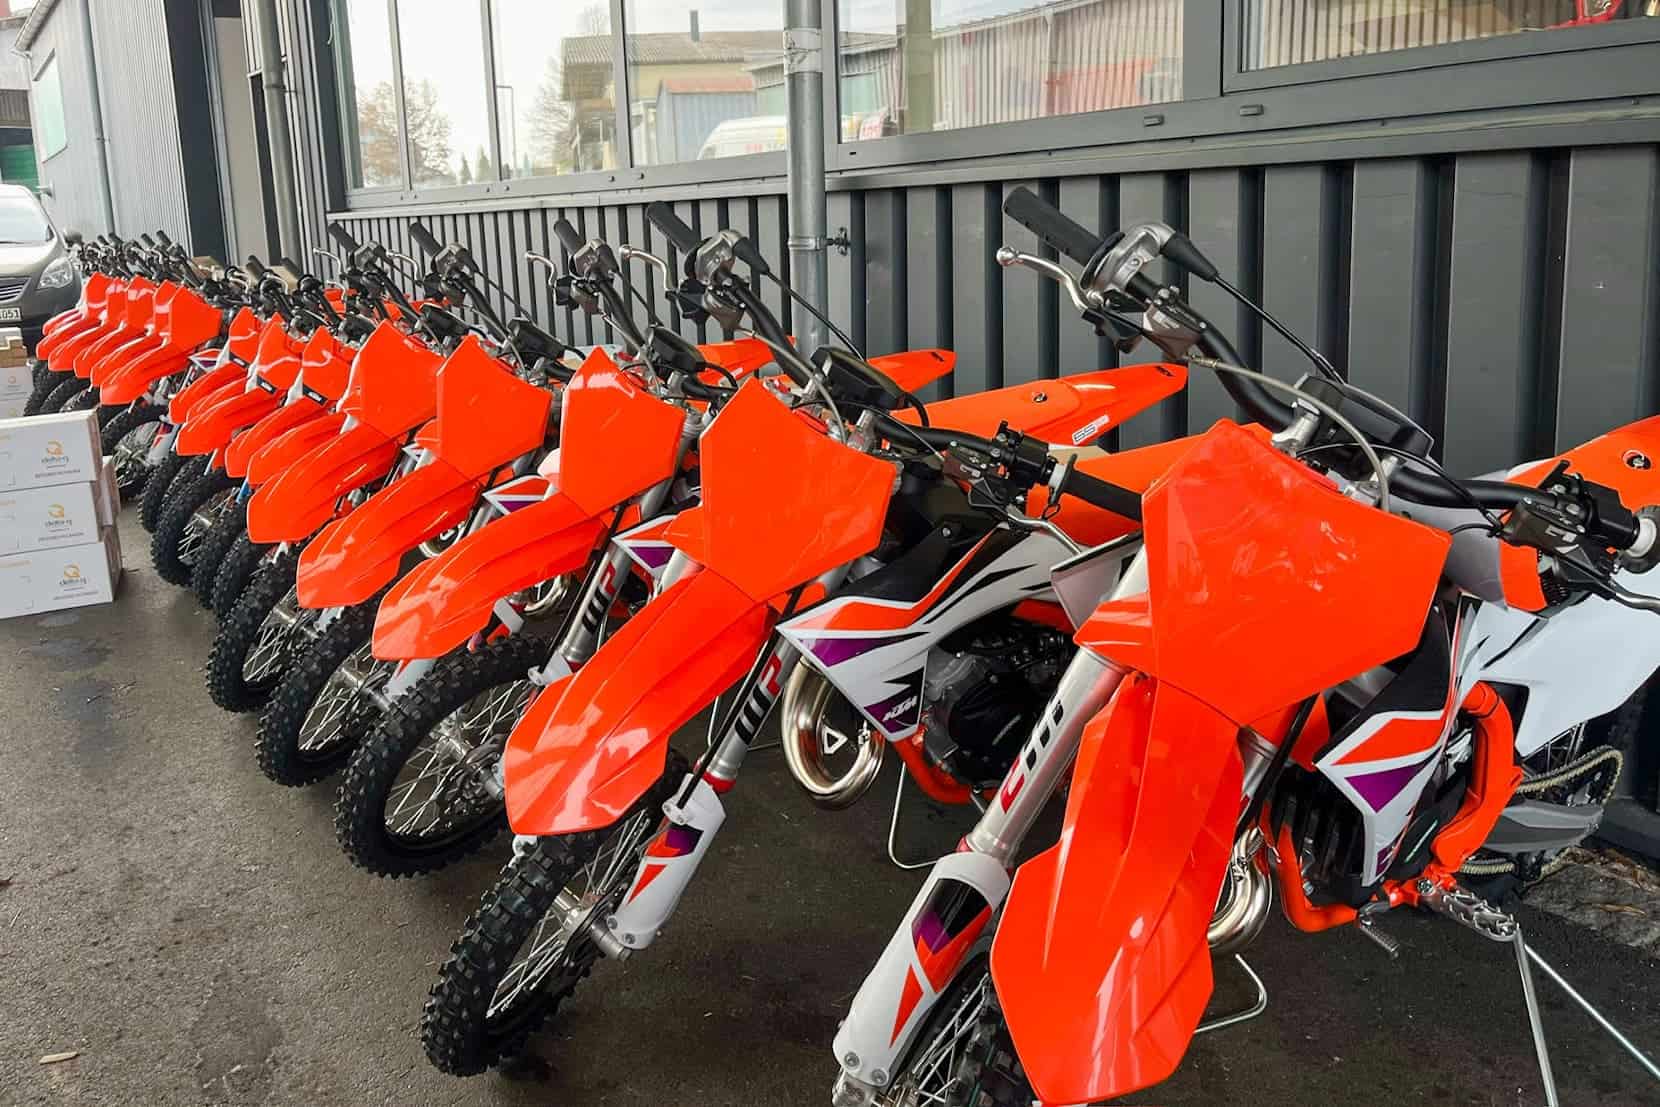 Die ADAC MX Academy startet mit neuen KTM-Motorrädern durch